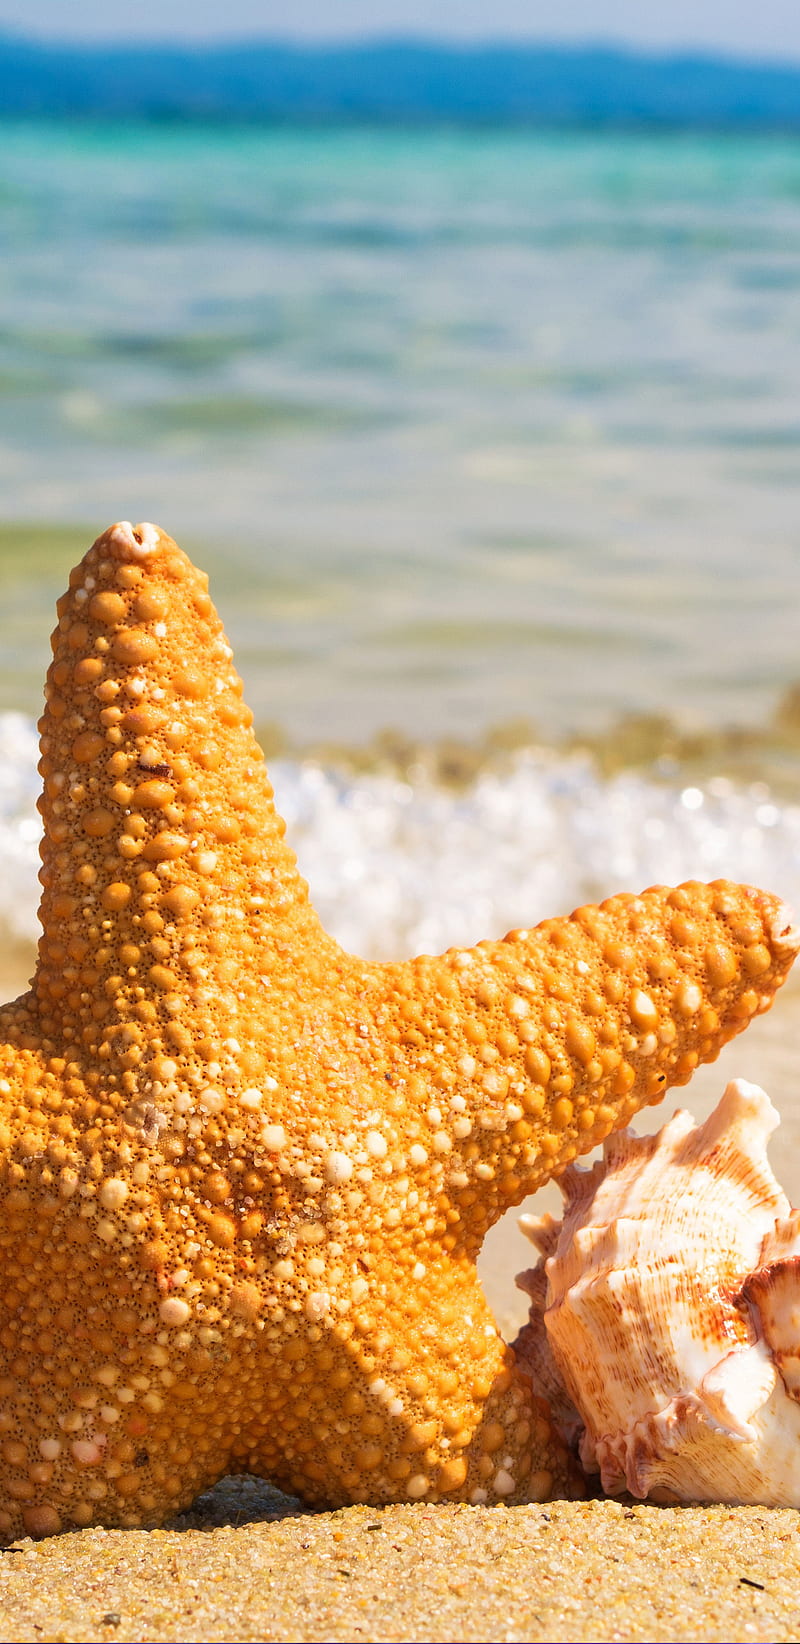 Starfish and shell on the beach - Starfish